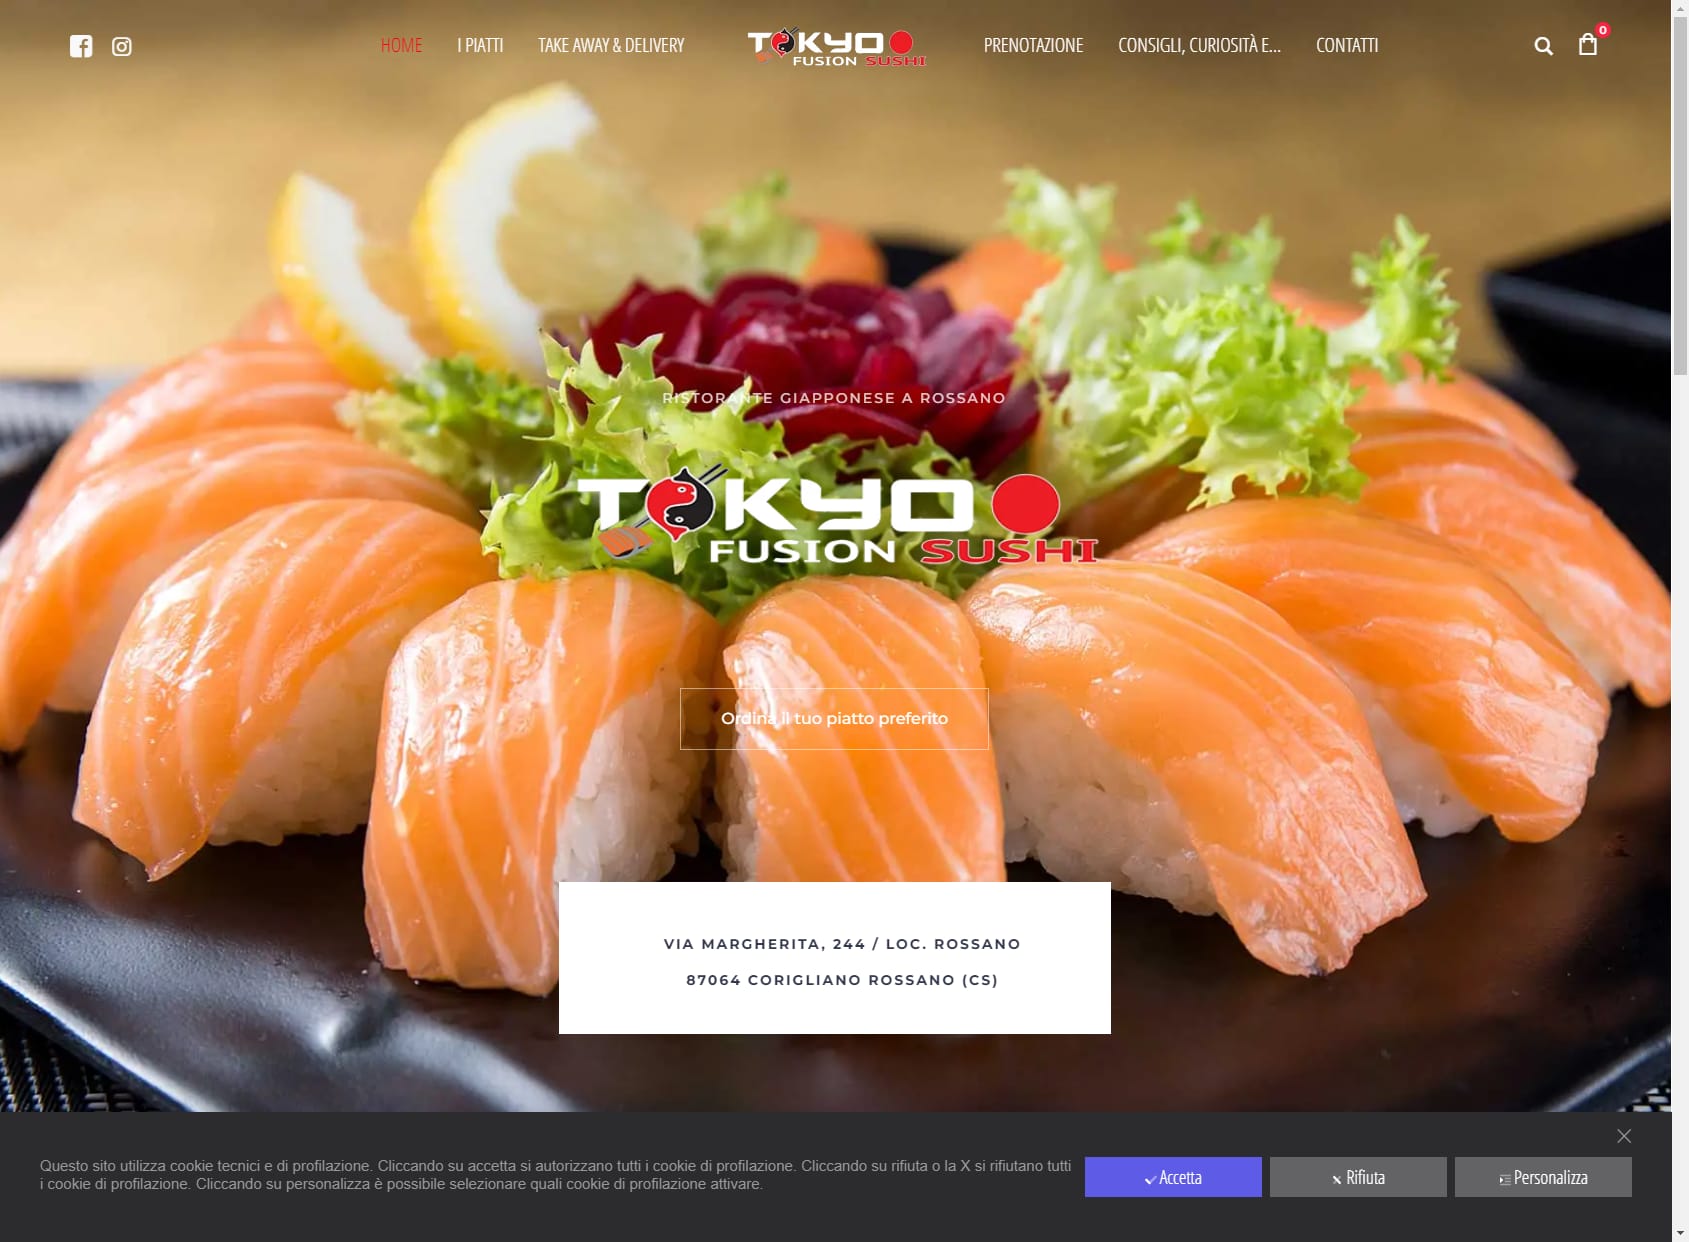 Tokyo Fusion Sushi